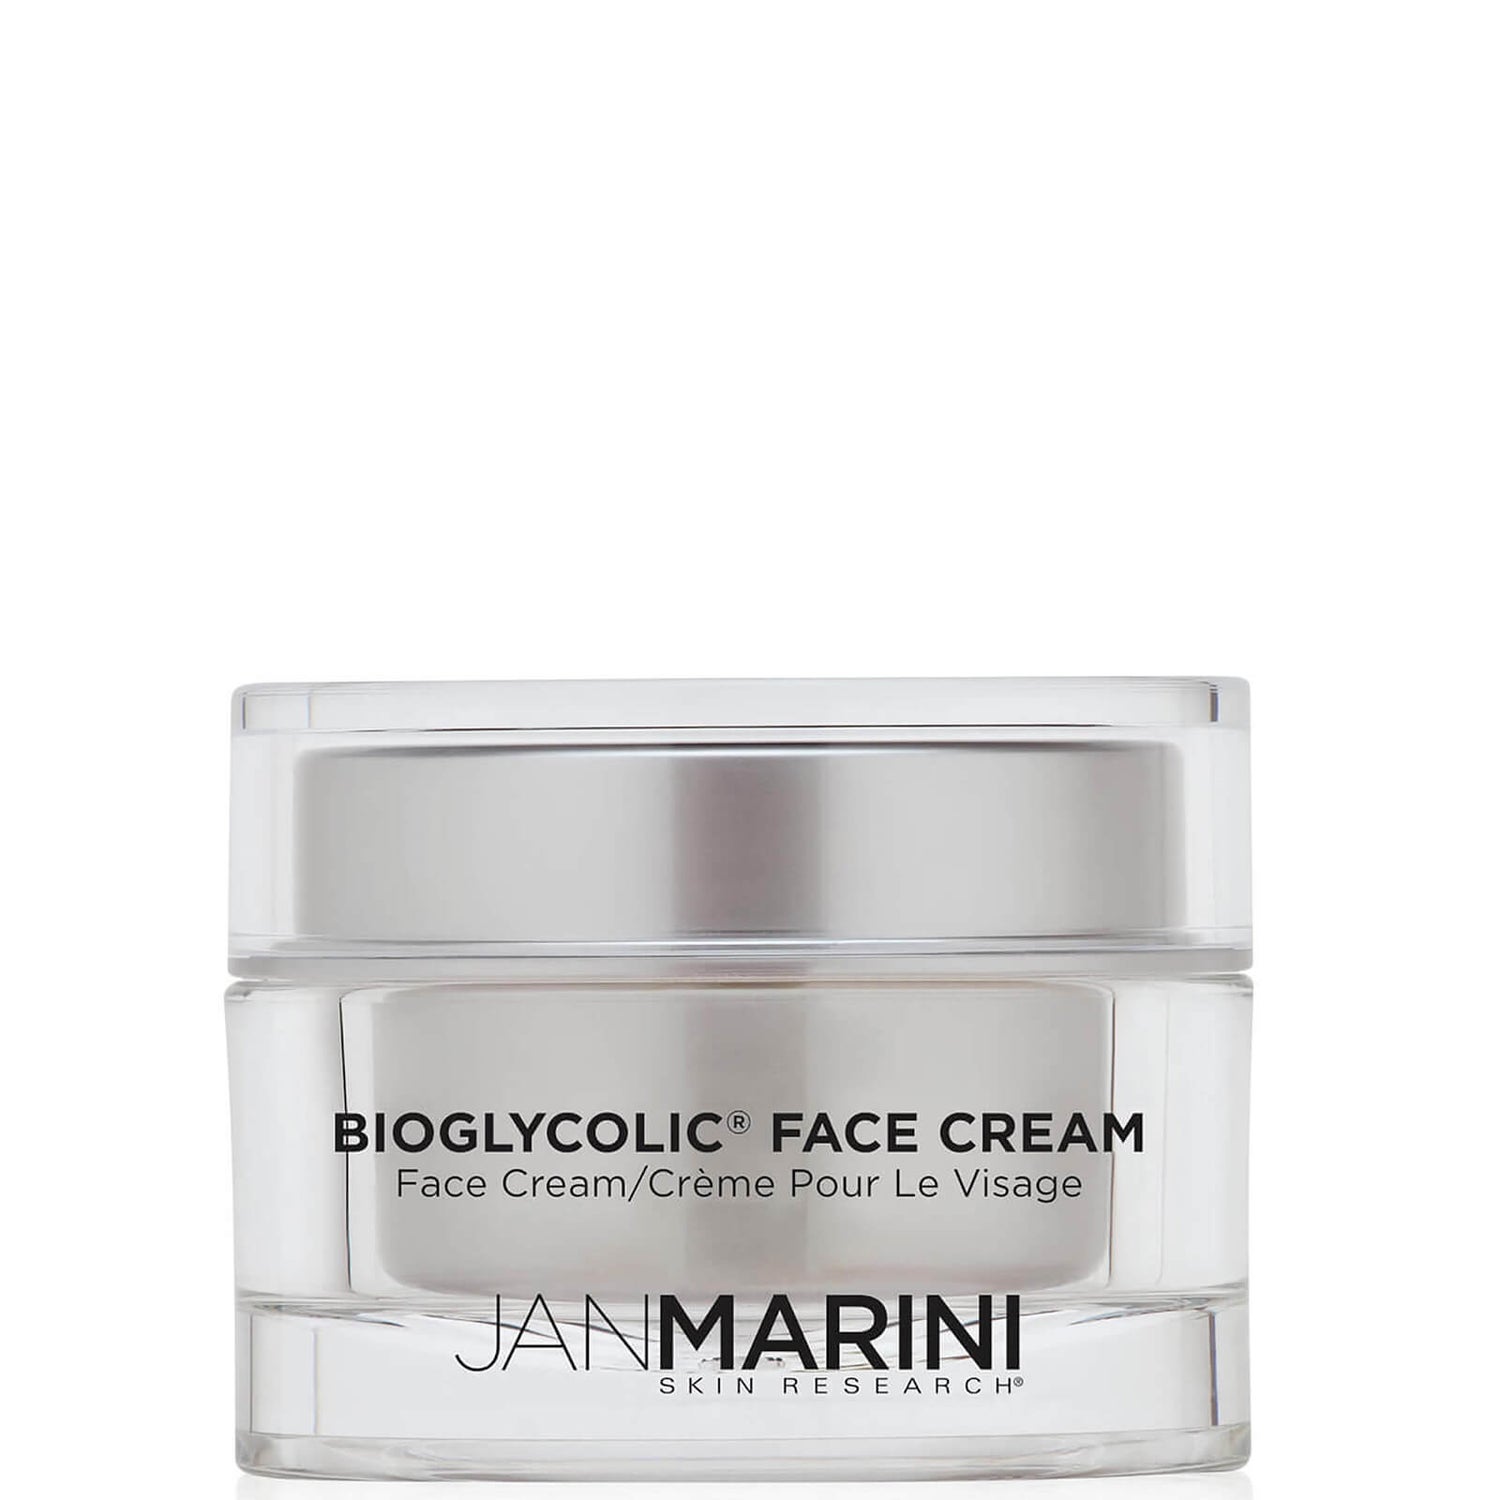 Jan Marini Bioglycolic Cream (2 oz.)